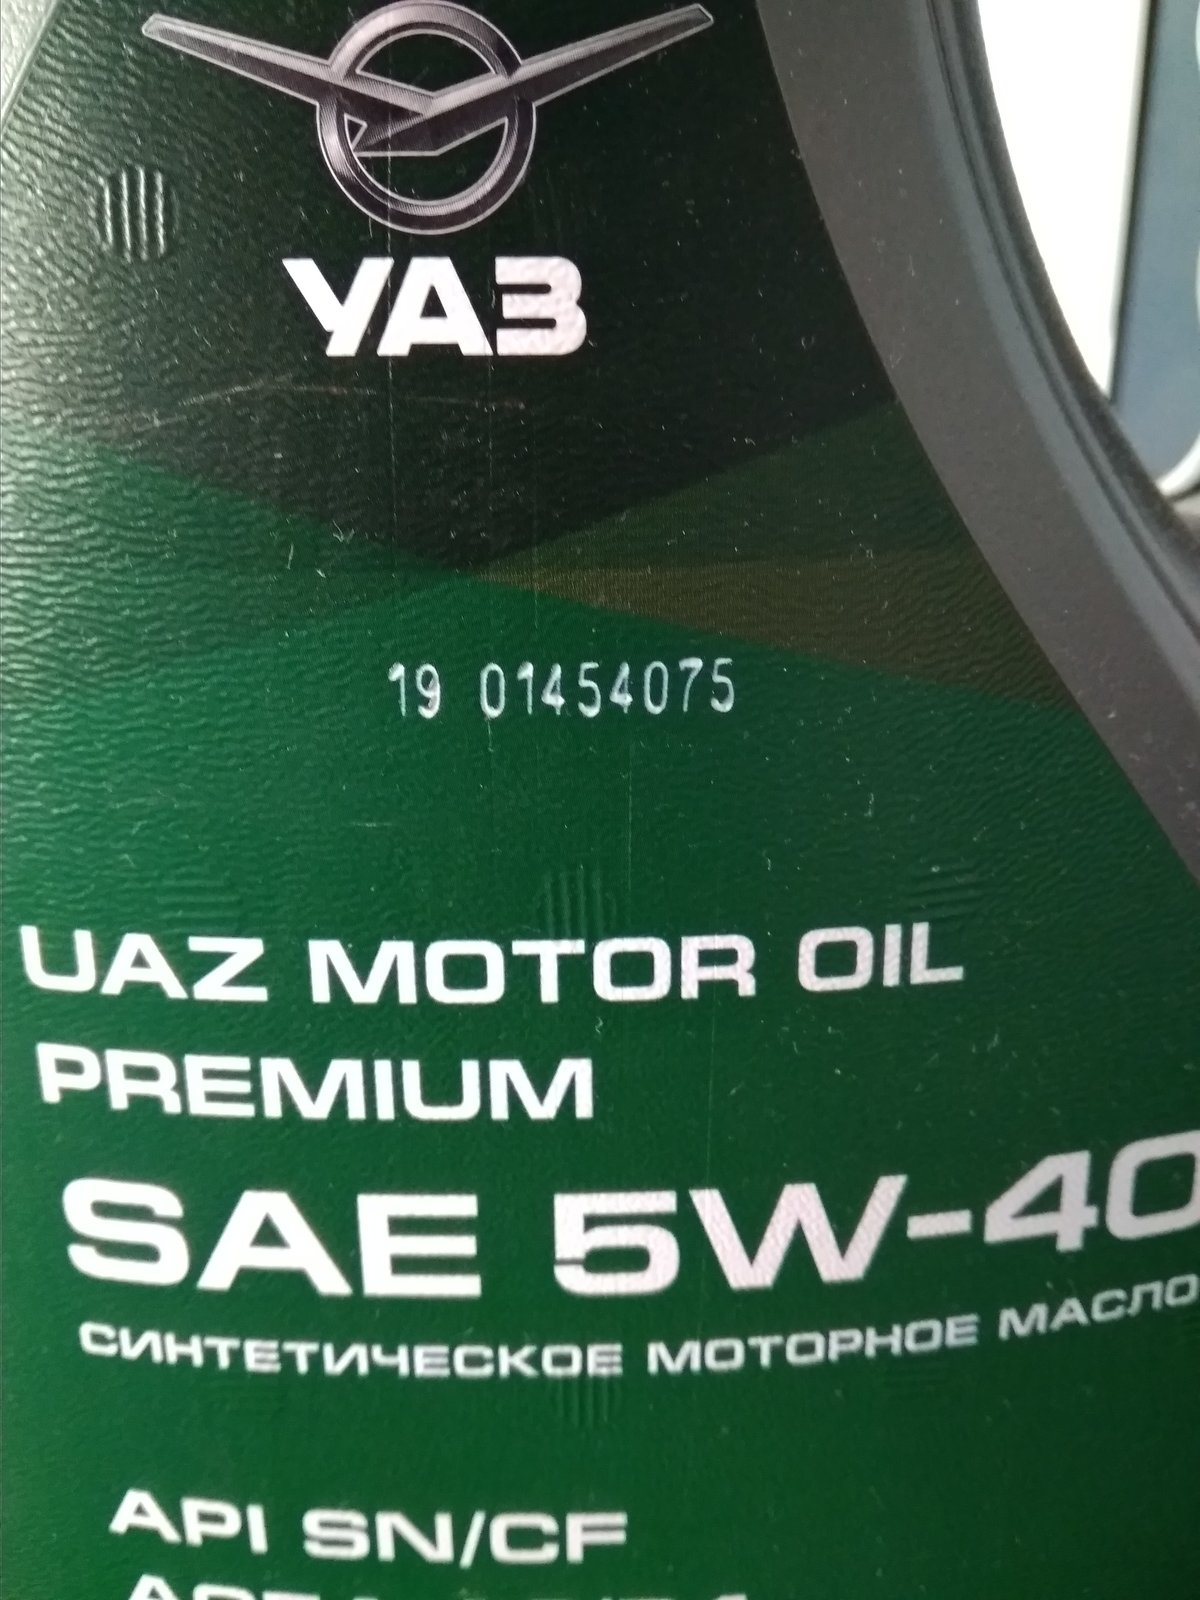 Масло уаз 5w40. УАЗ Premium 5w-40. UAZ Motor Oil Premium 5w-40. УАЗ премиум 5w40 синтетика.